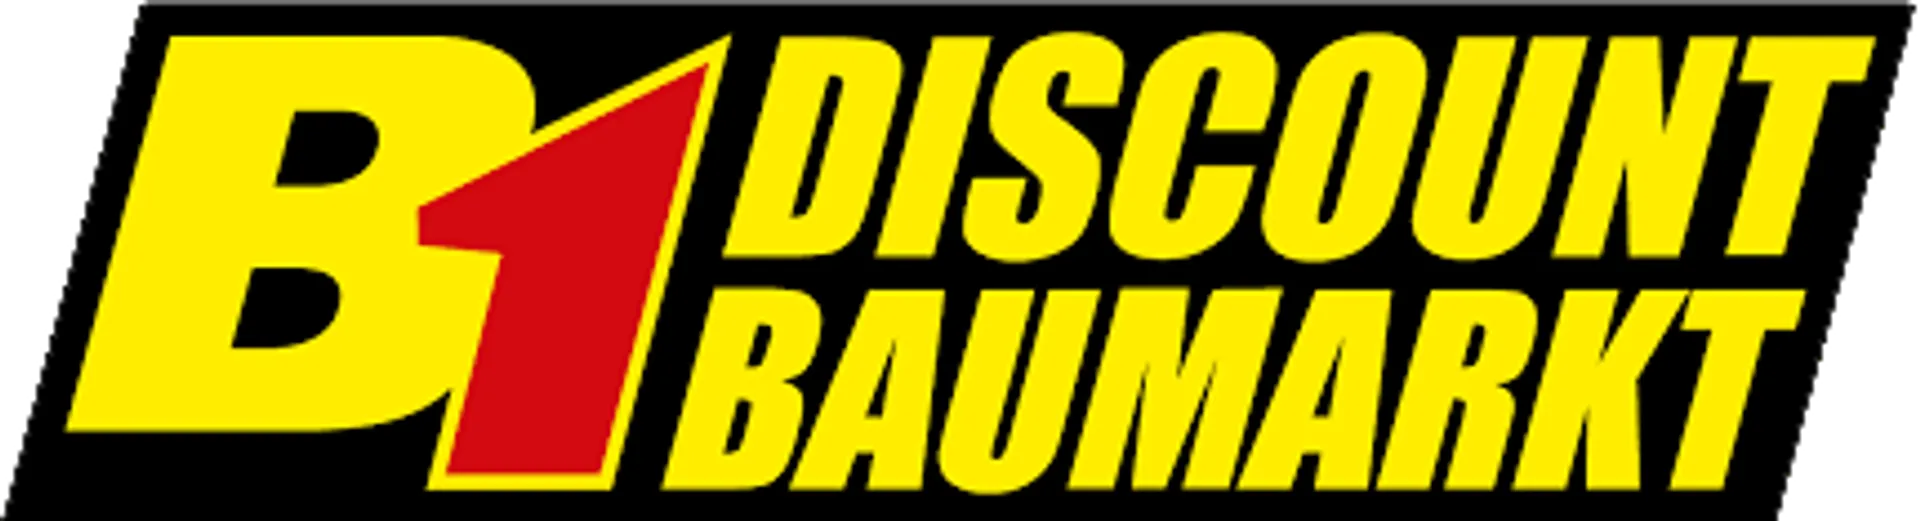 B1 DISCOUNT BAUMARKT logo die aktuell Prospekt